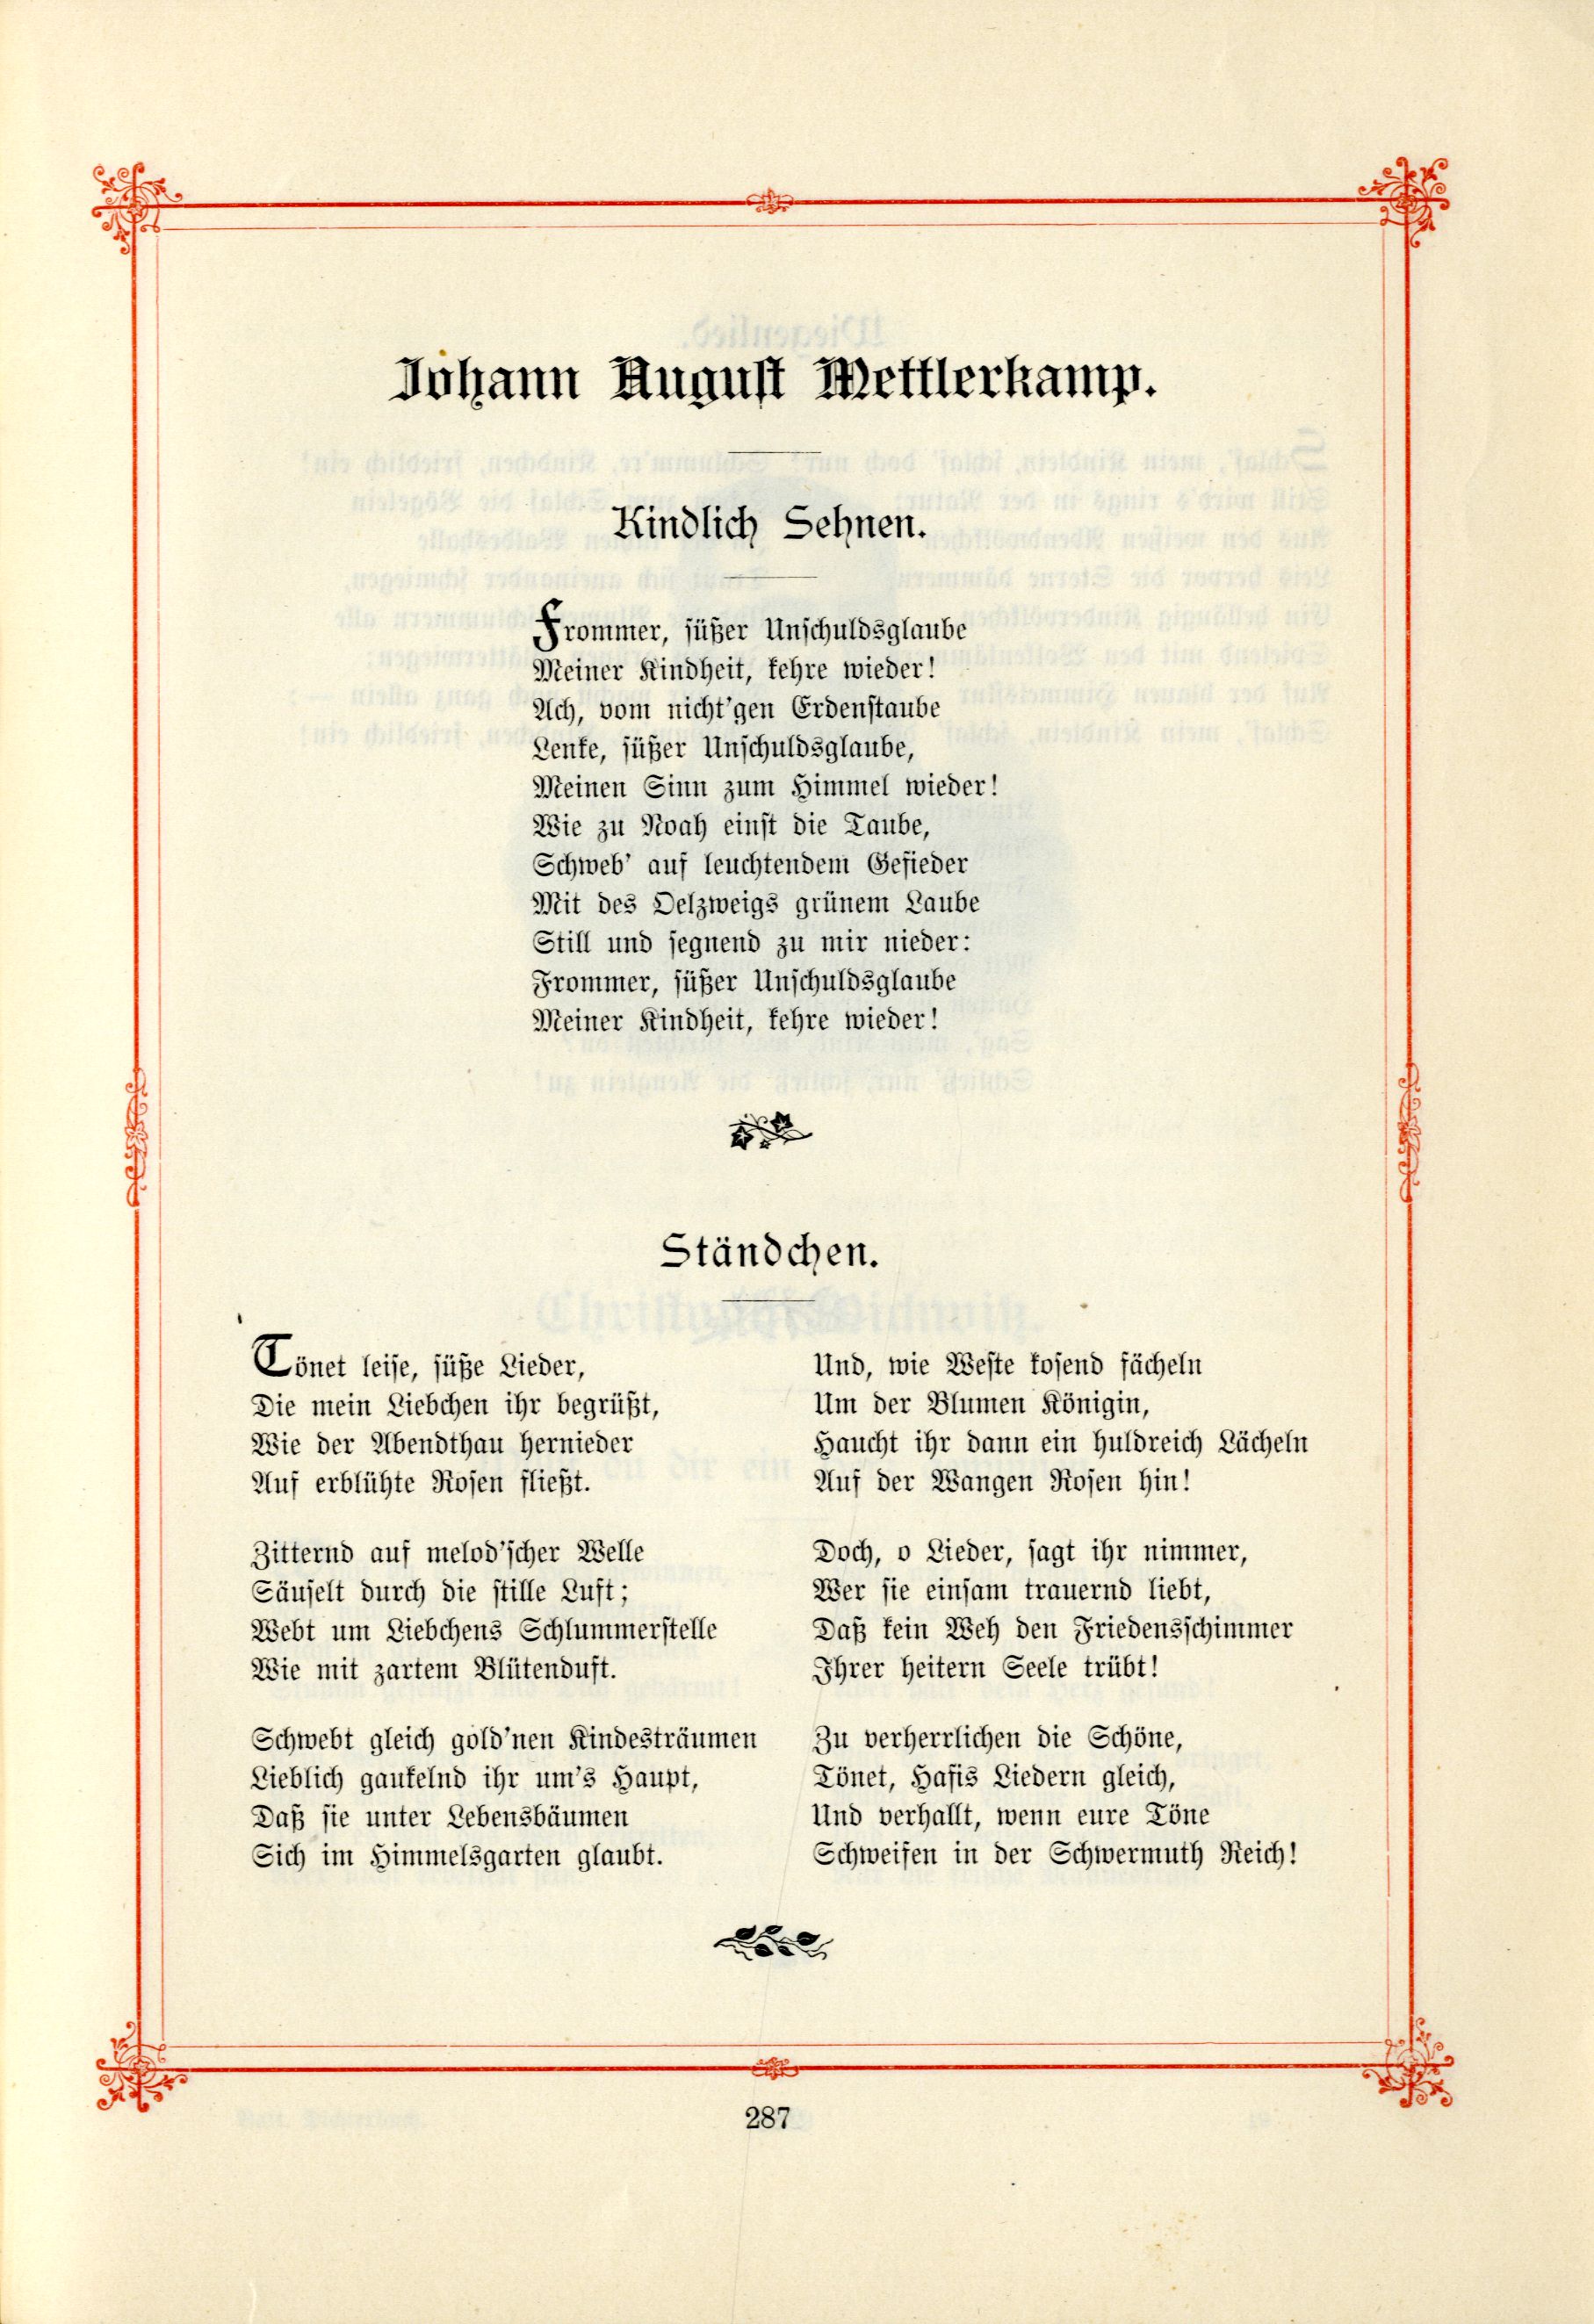 Ständchen (1895) | 1. (287) Main body of text